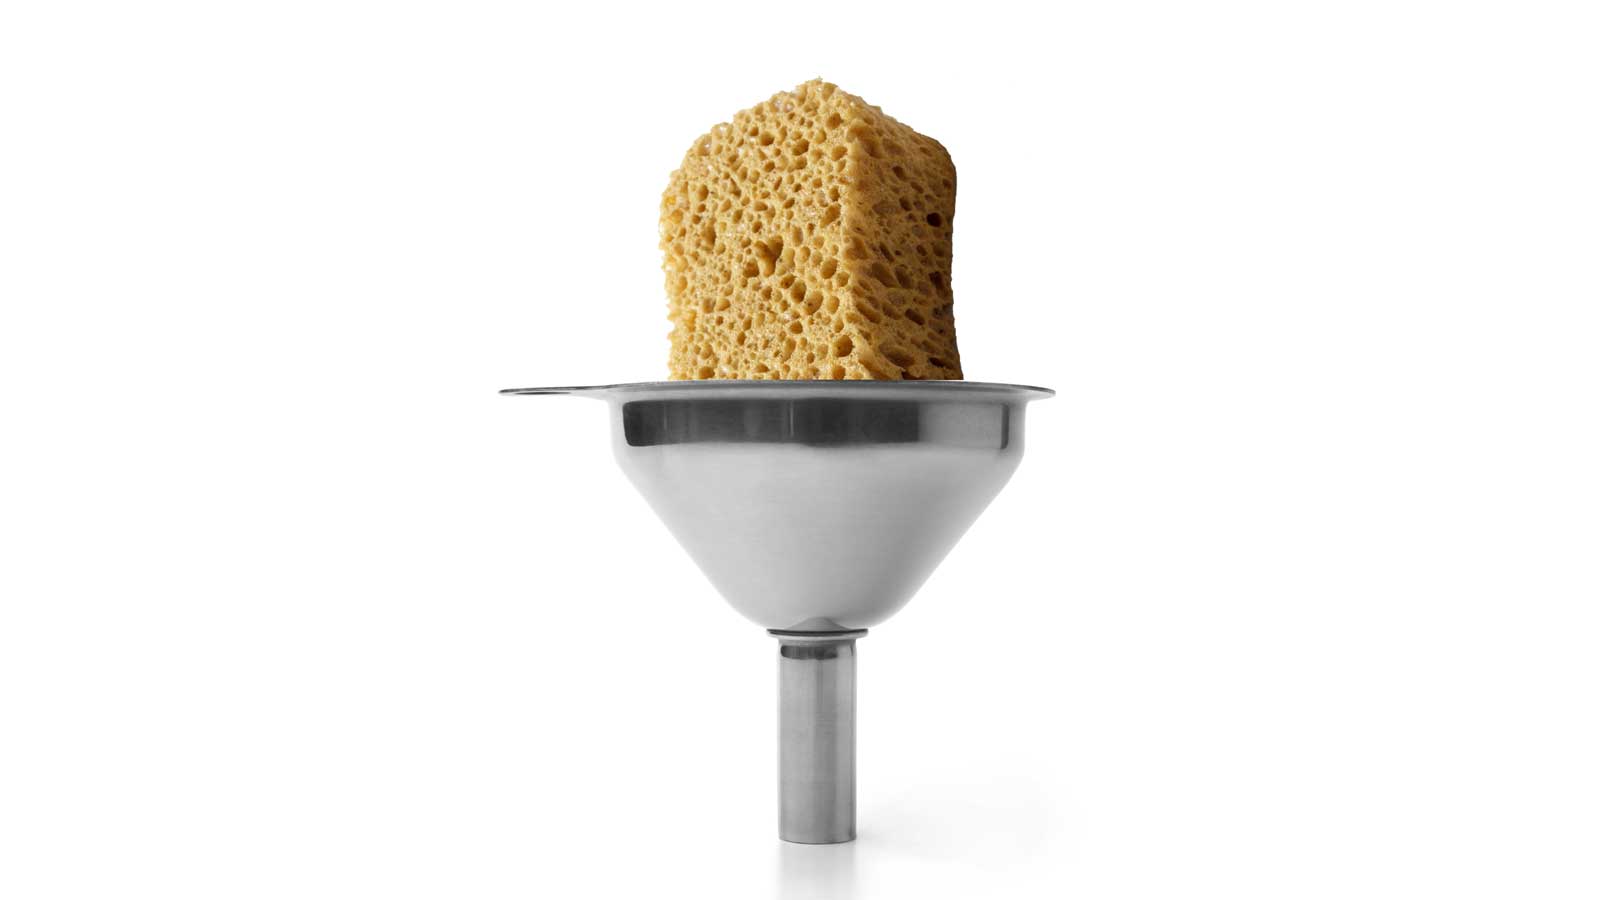 sponge in a funnel